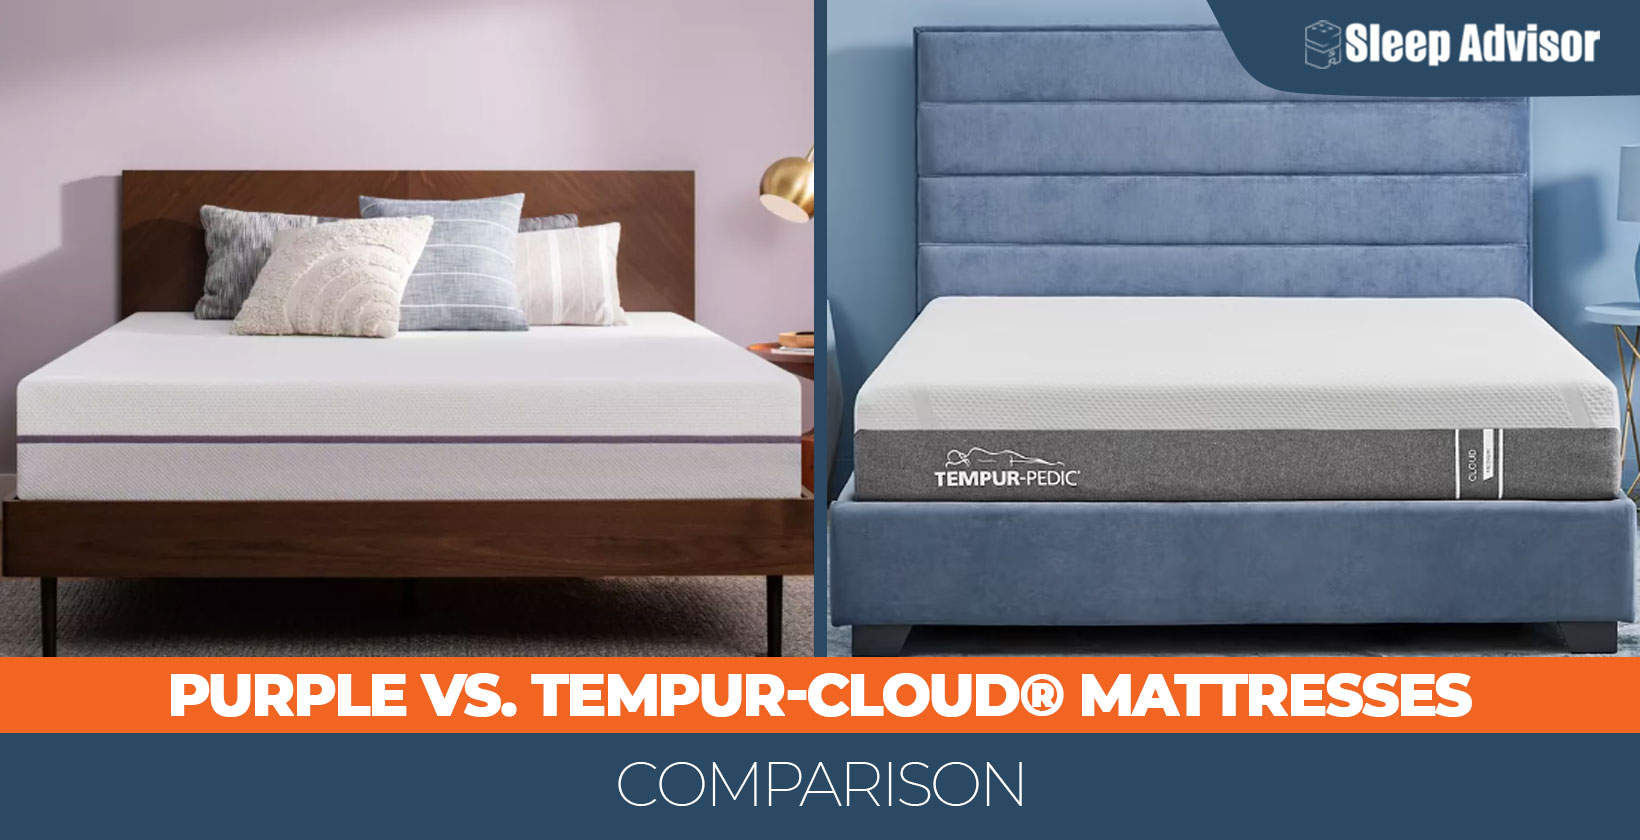 Our Purple vs. Tempur-Cloud® bed comparison for 2023